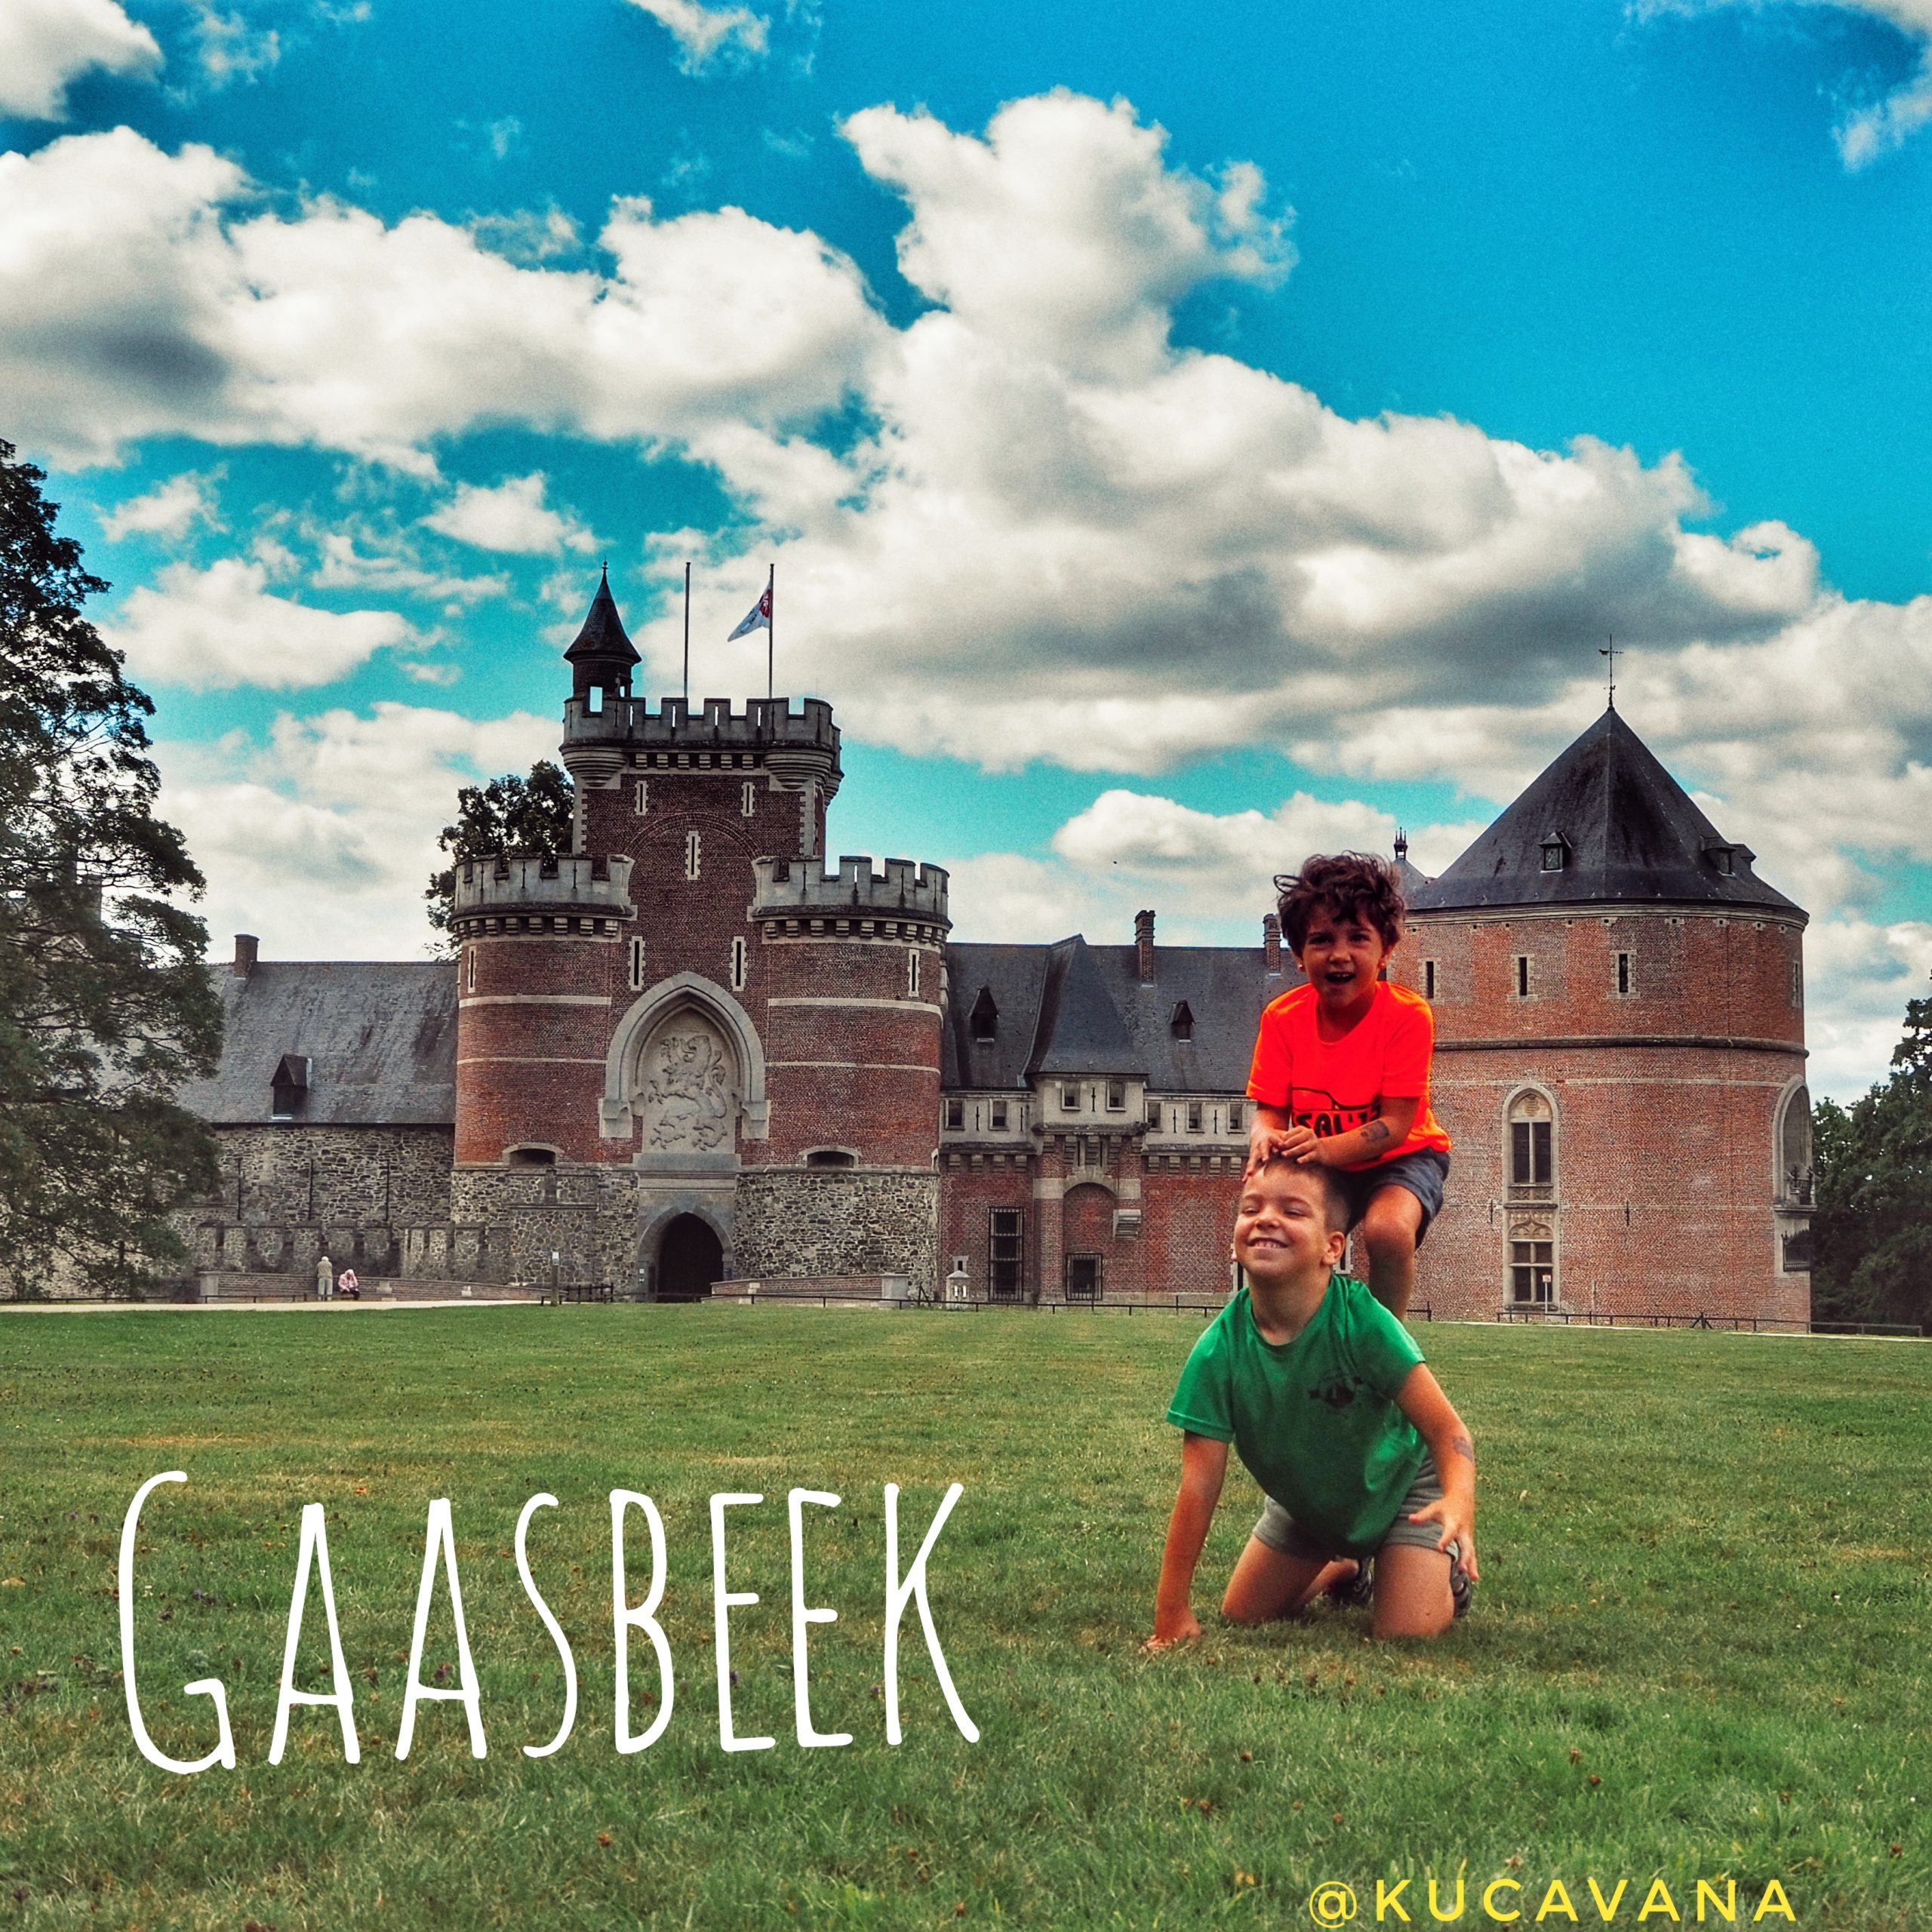 En este momento estás viendo Gaasbeek, un castillo belga de cuento de hadas